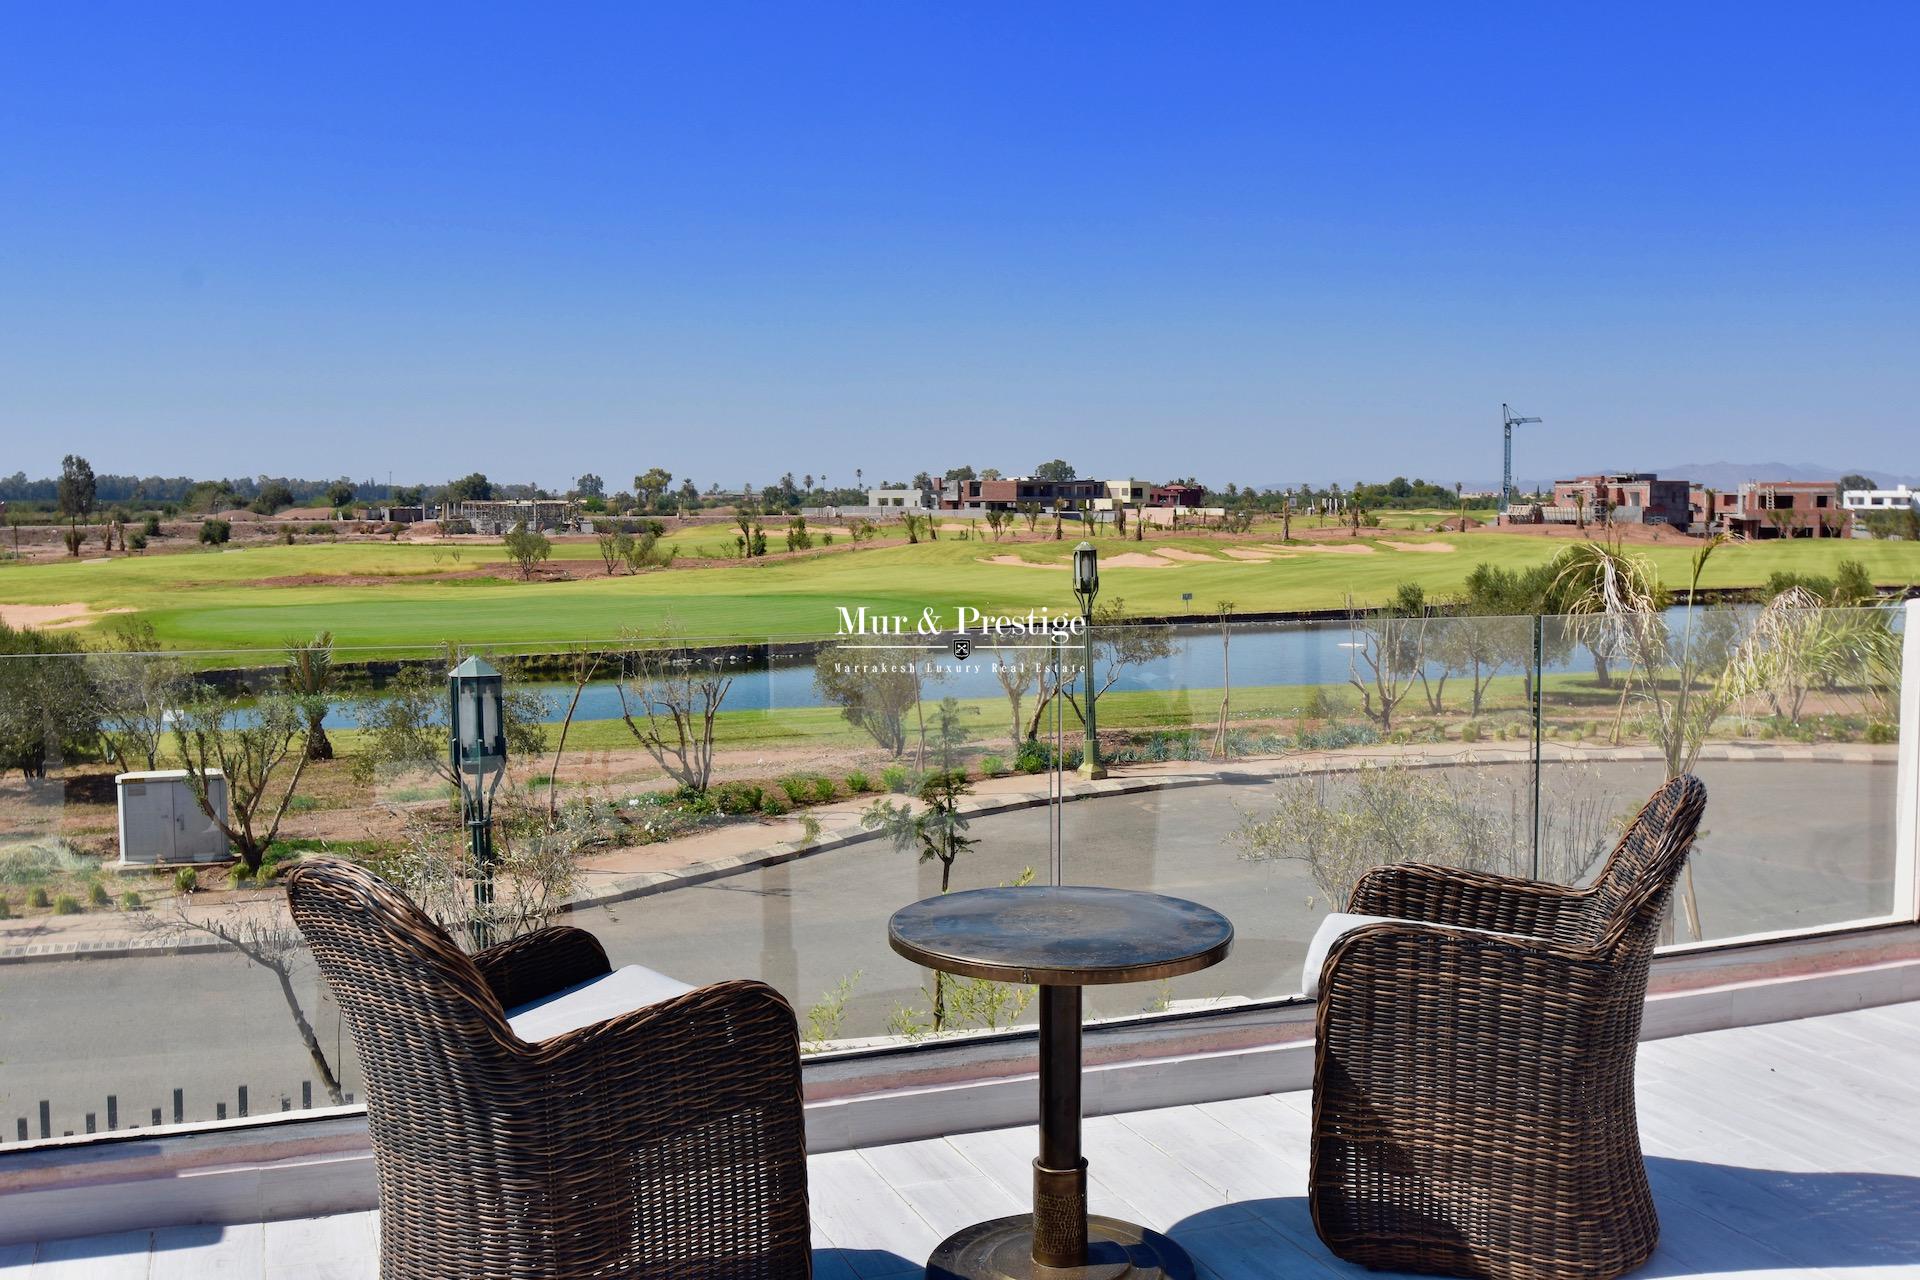 Vente maison golf Amelkis Marrakech , vue exceptionnelle sur le golf 